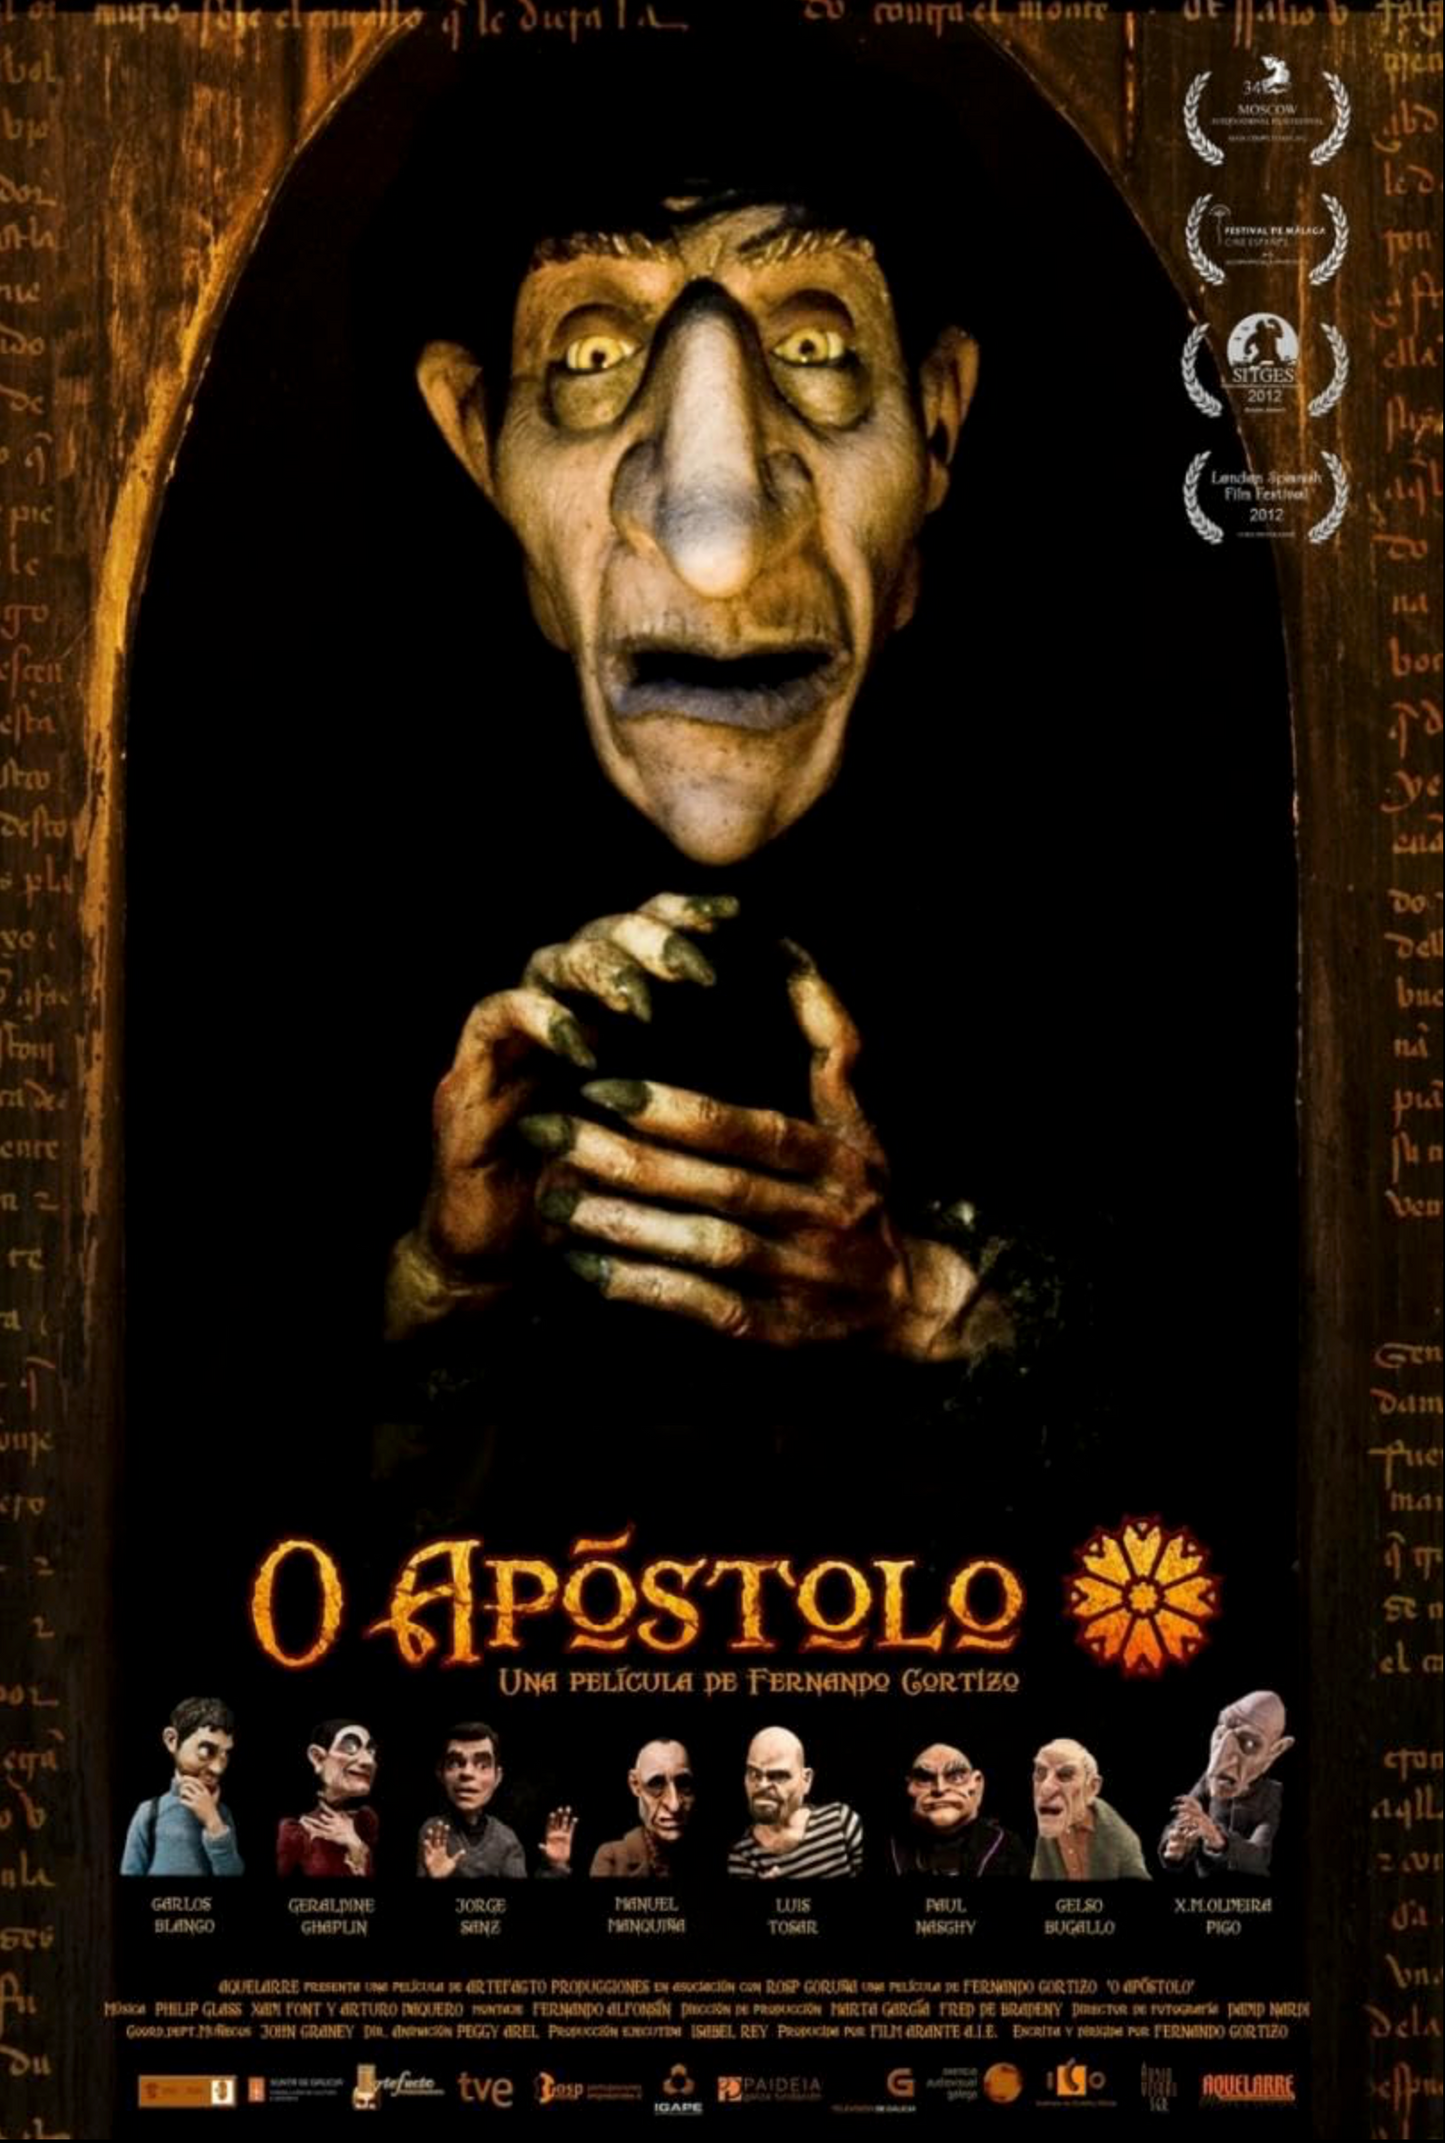 The Apostle (DVD)